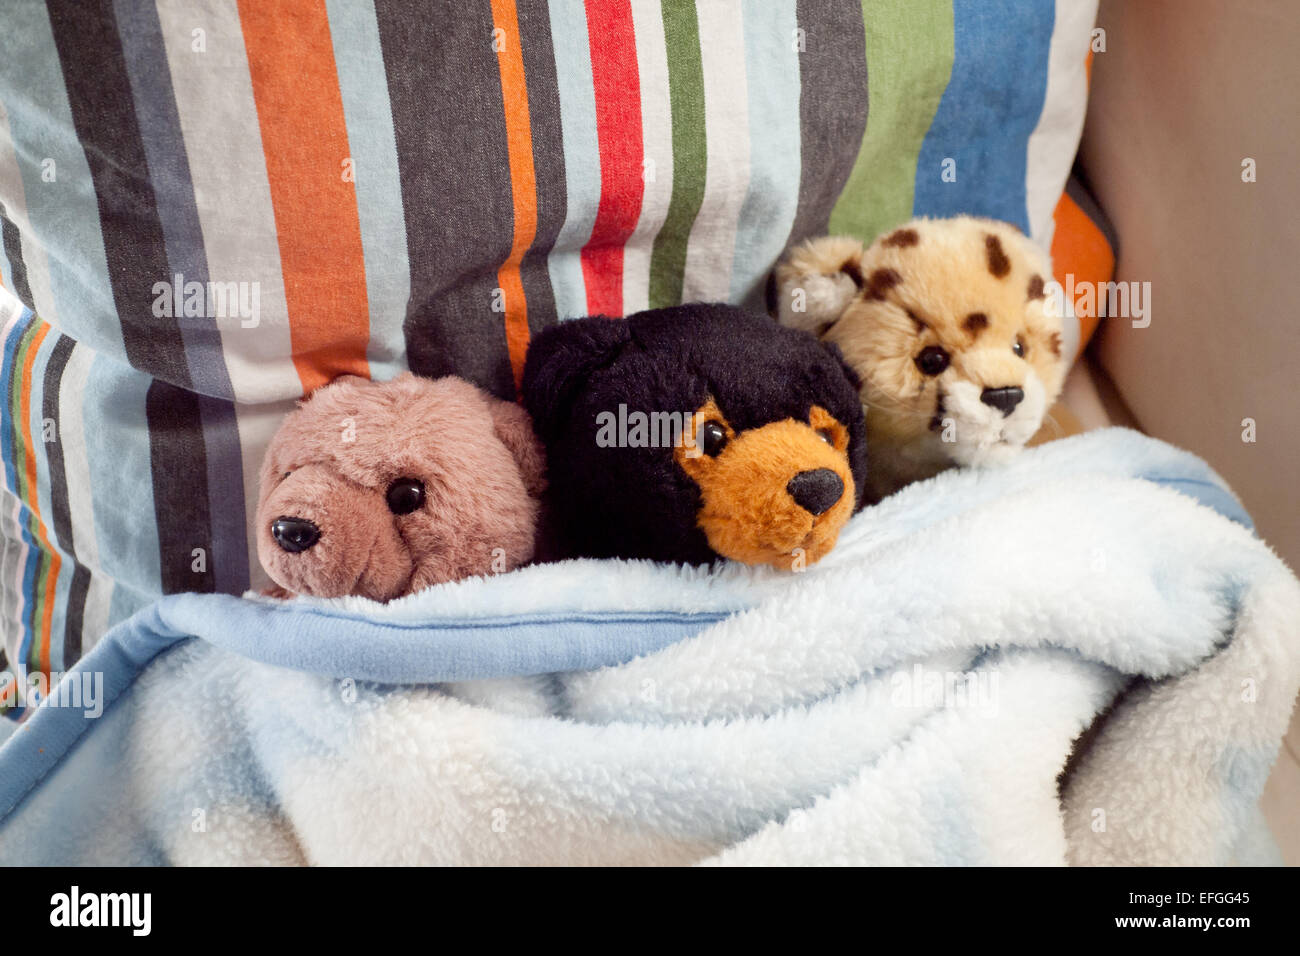 Due farcite porta e un ghepardo ripiene, accogliente in una coperta. Foto Stock